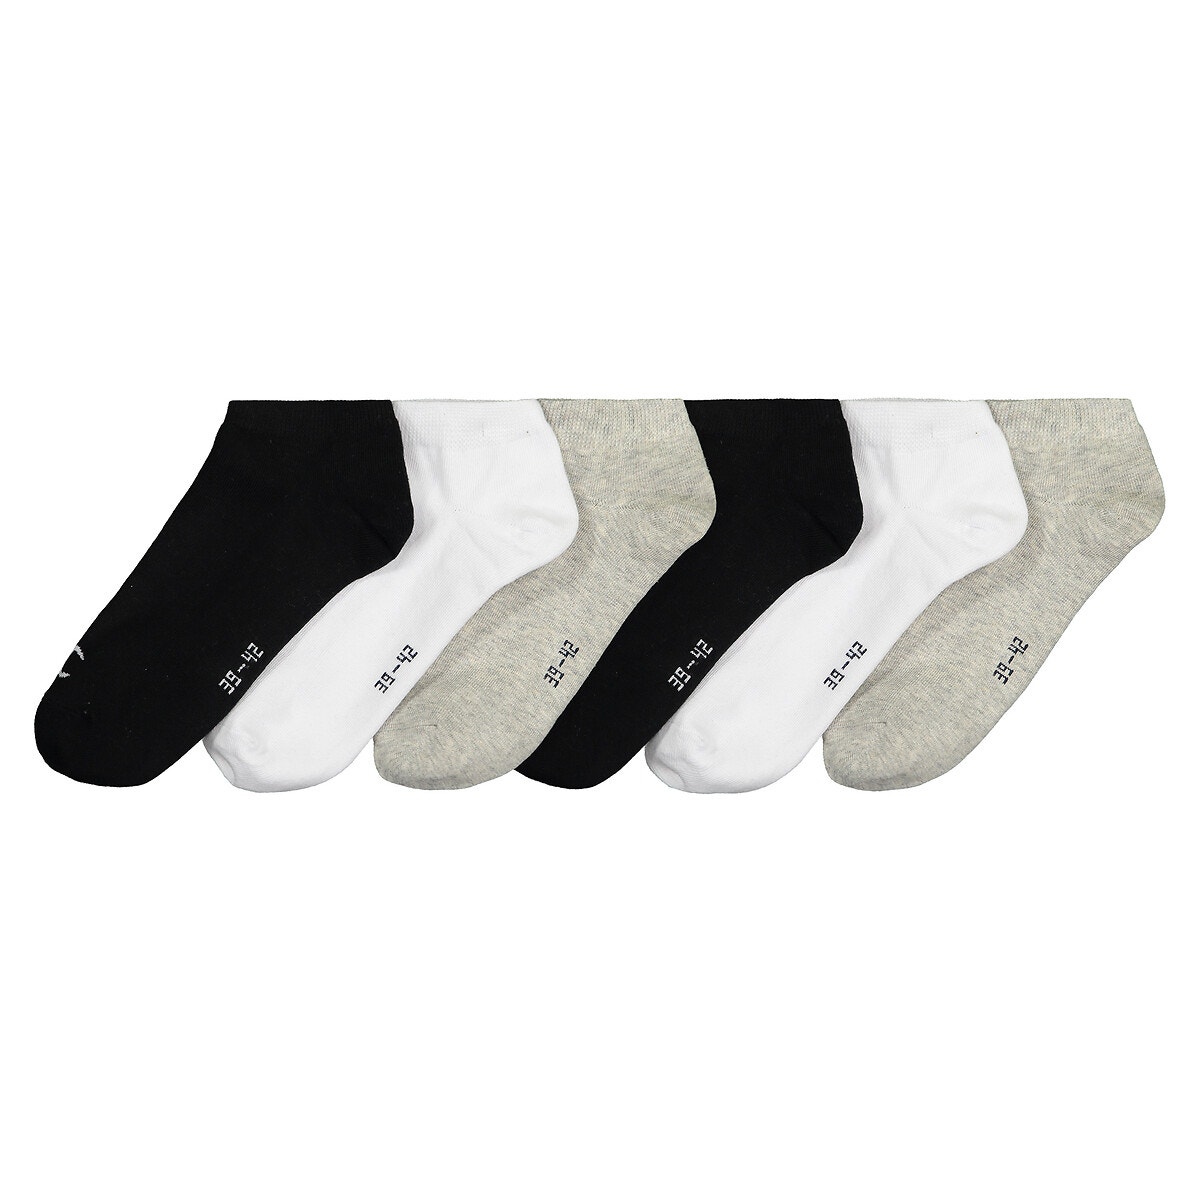 ② Chaussettes Nike en noir et blanc. 38-42 et 43-46